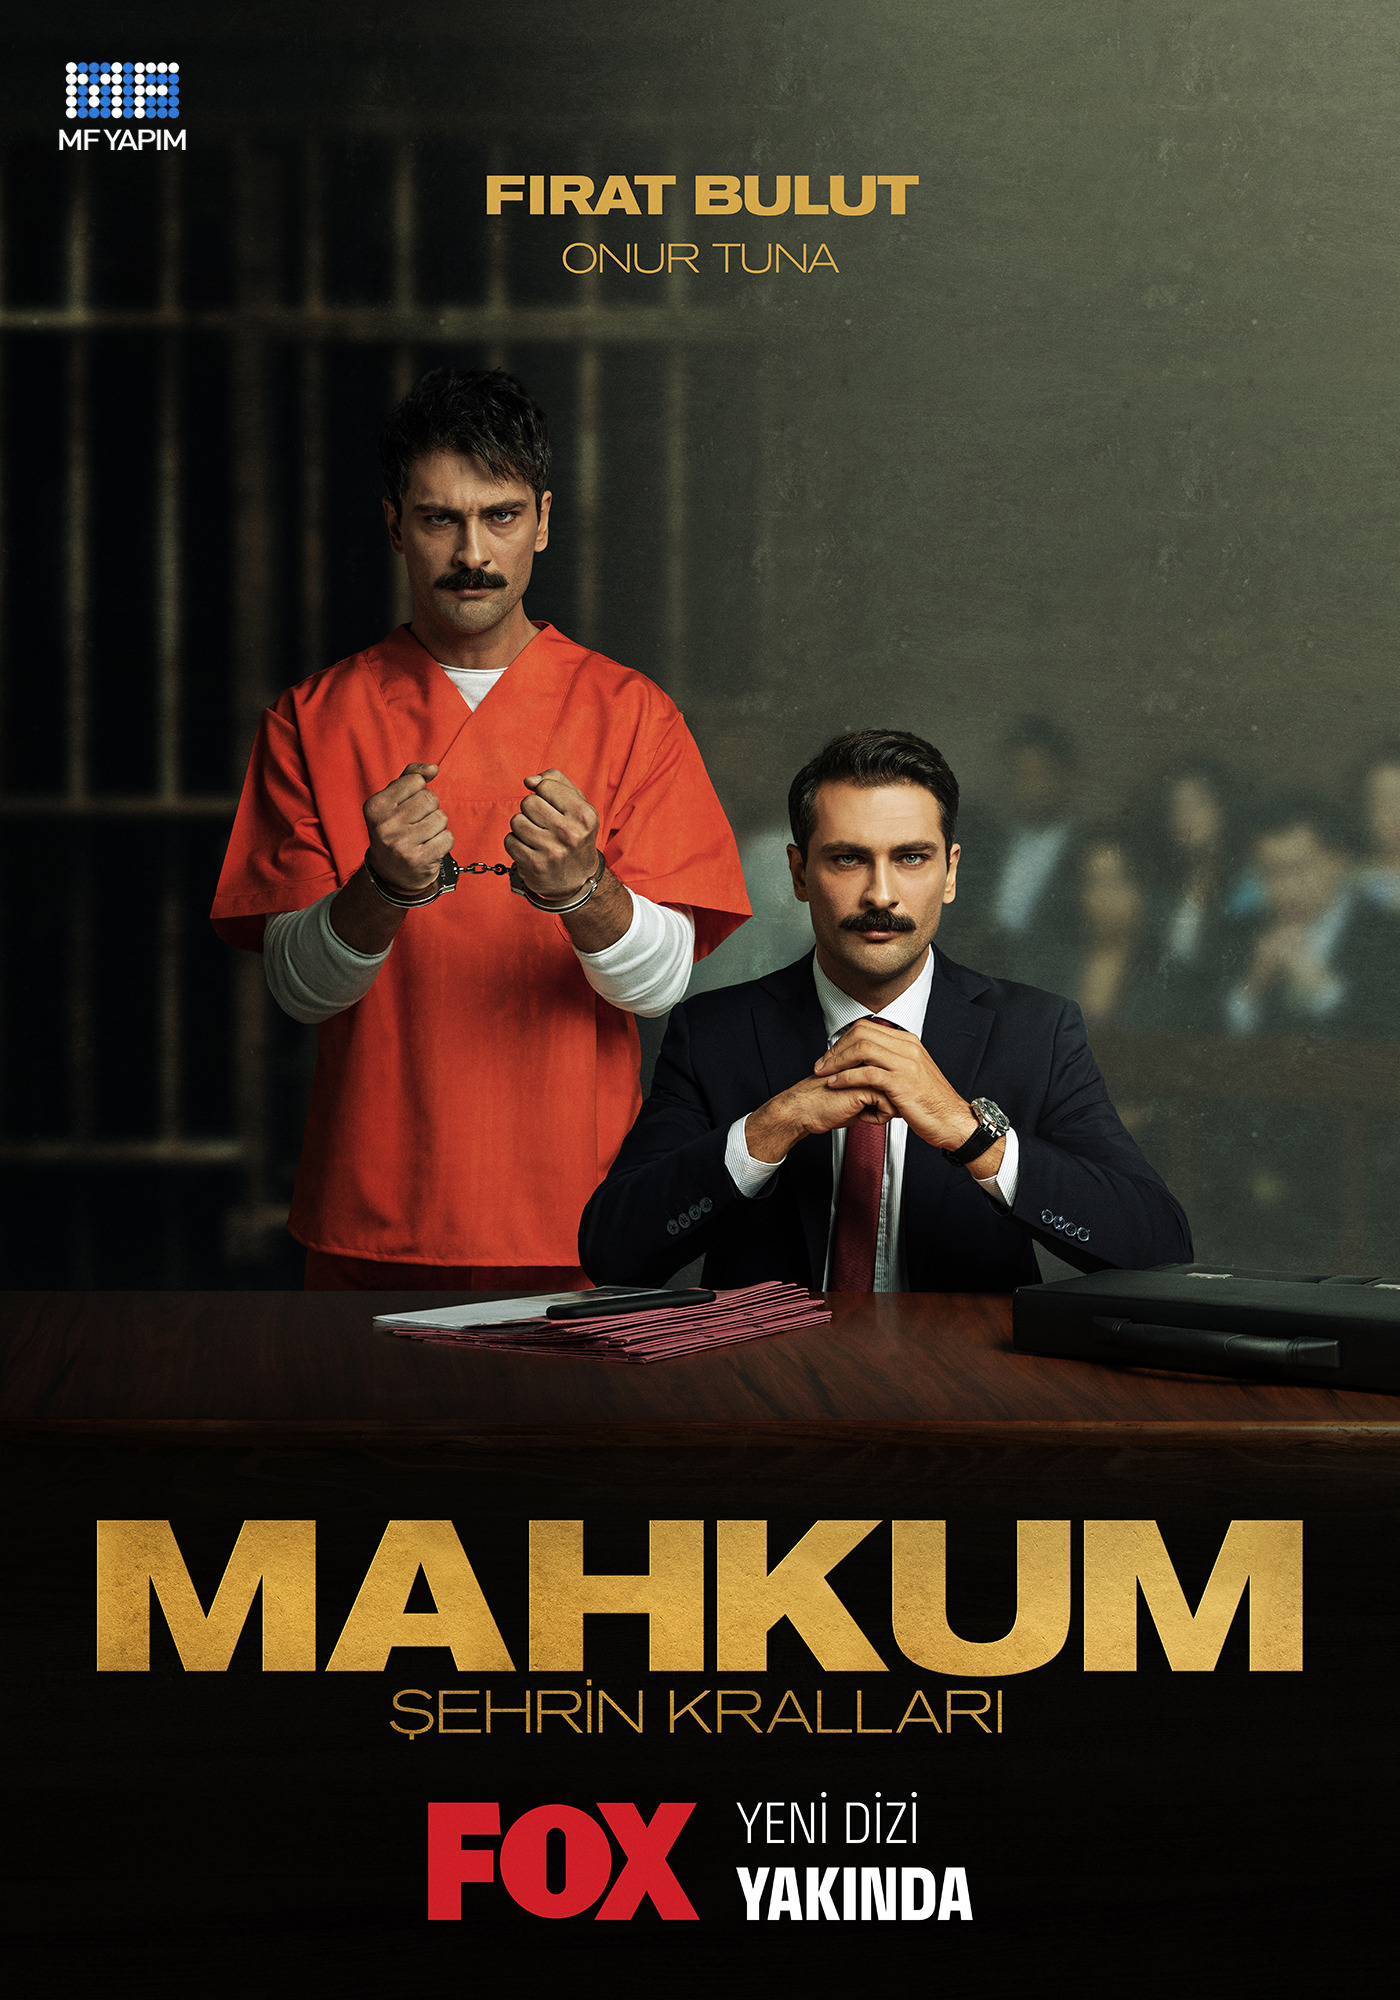 Mega Sized TV Poster Image for Mahkum (#5 of 5)